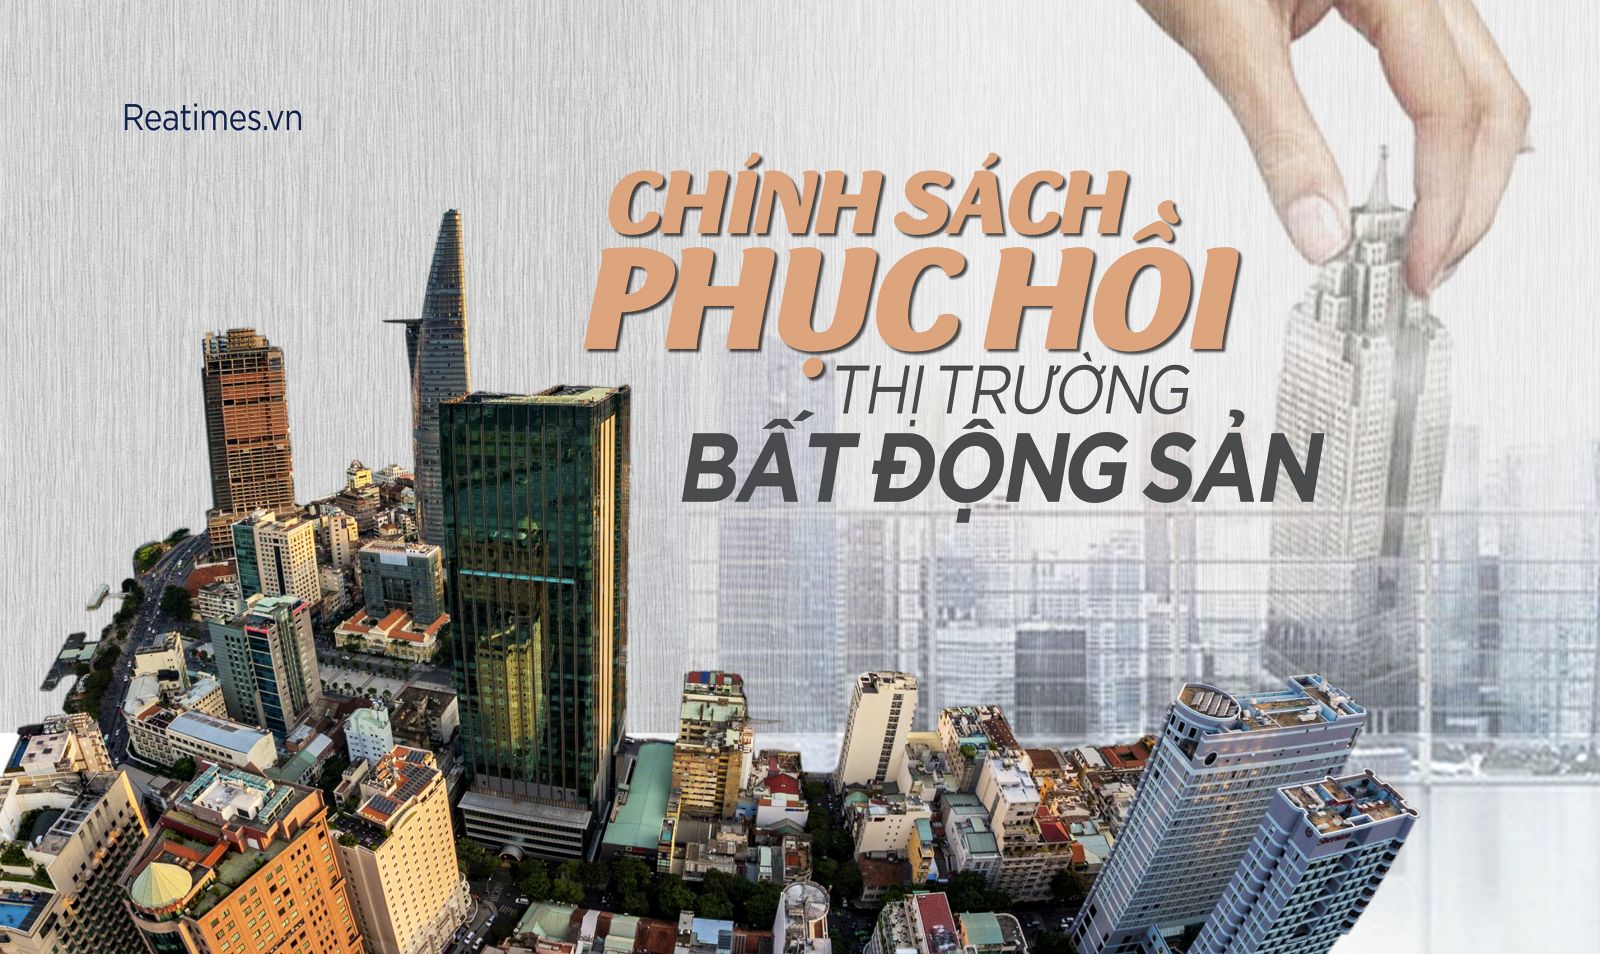 Chinh sach PHUC HOI BDS